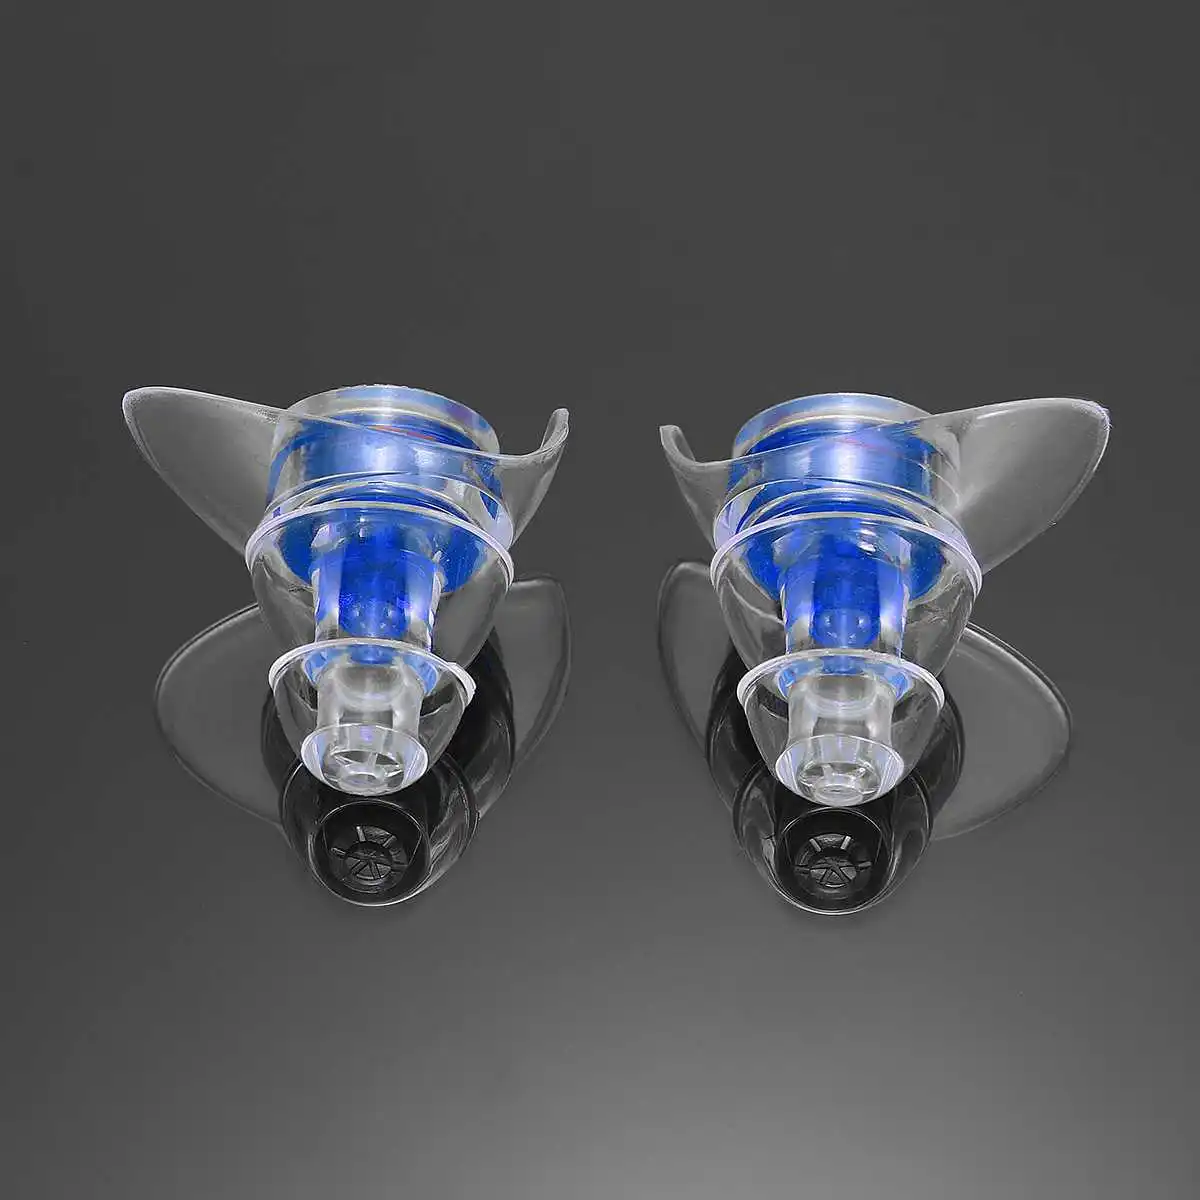 2 пары мягких силиконовых ушных затычек, защита для ушей, многоразовые профессиональные музыкальные затычки для ушей, предотвращение шума, для путешествий, сна, спорта - Цвет: Синий